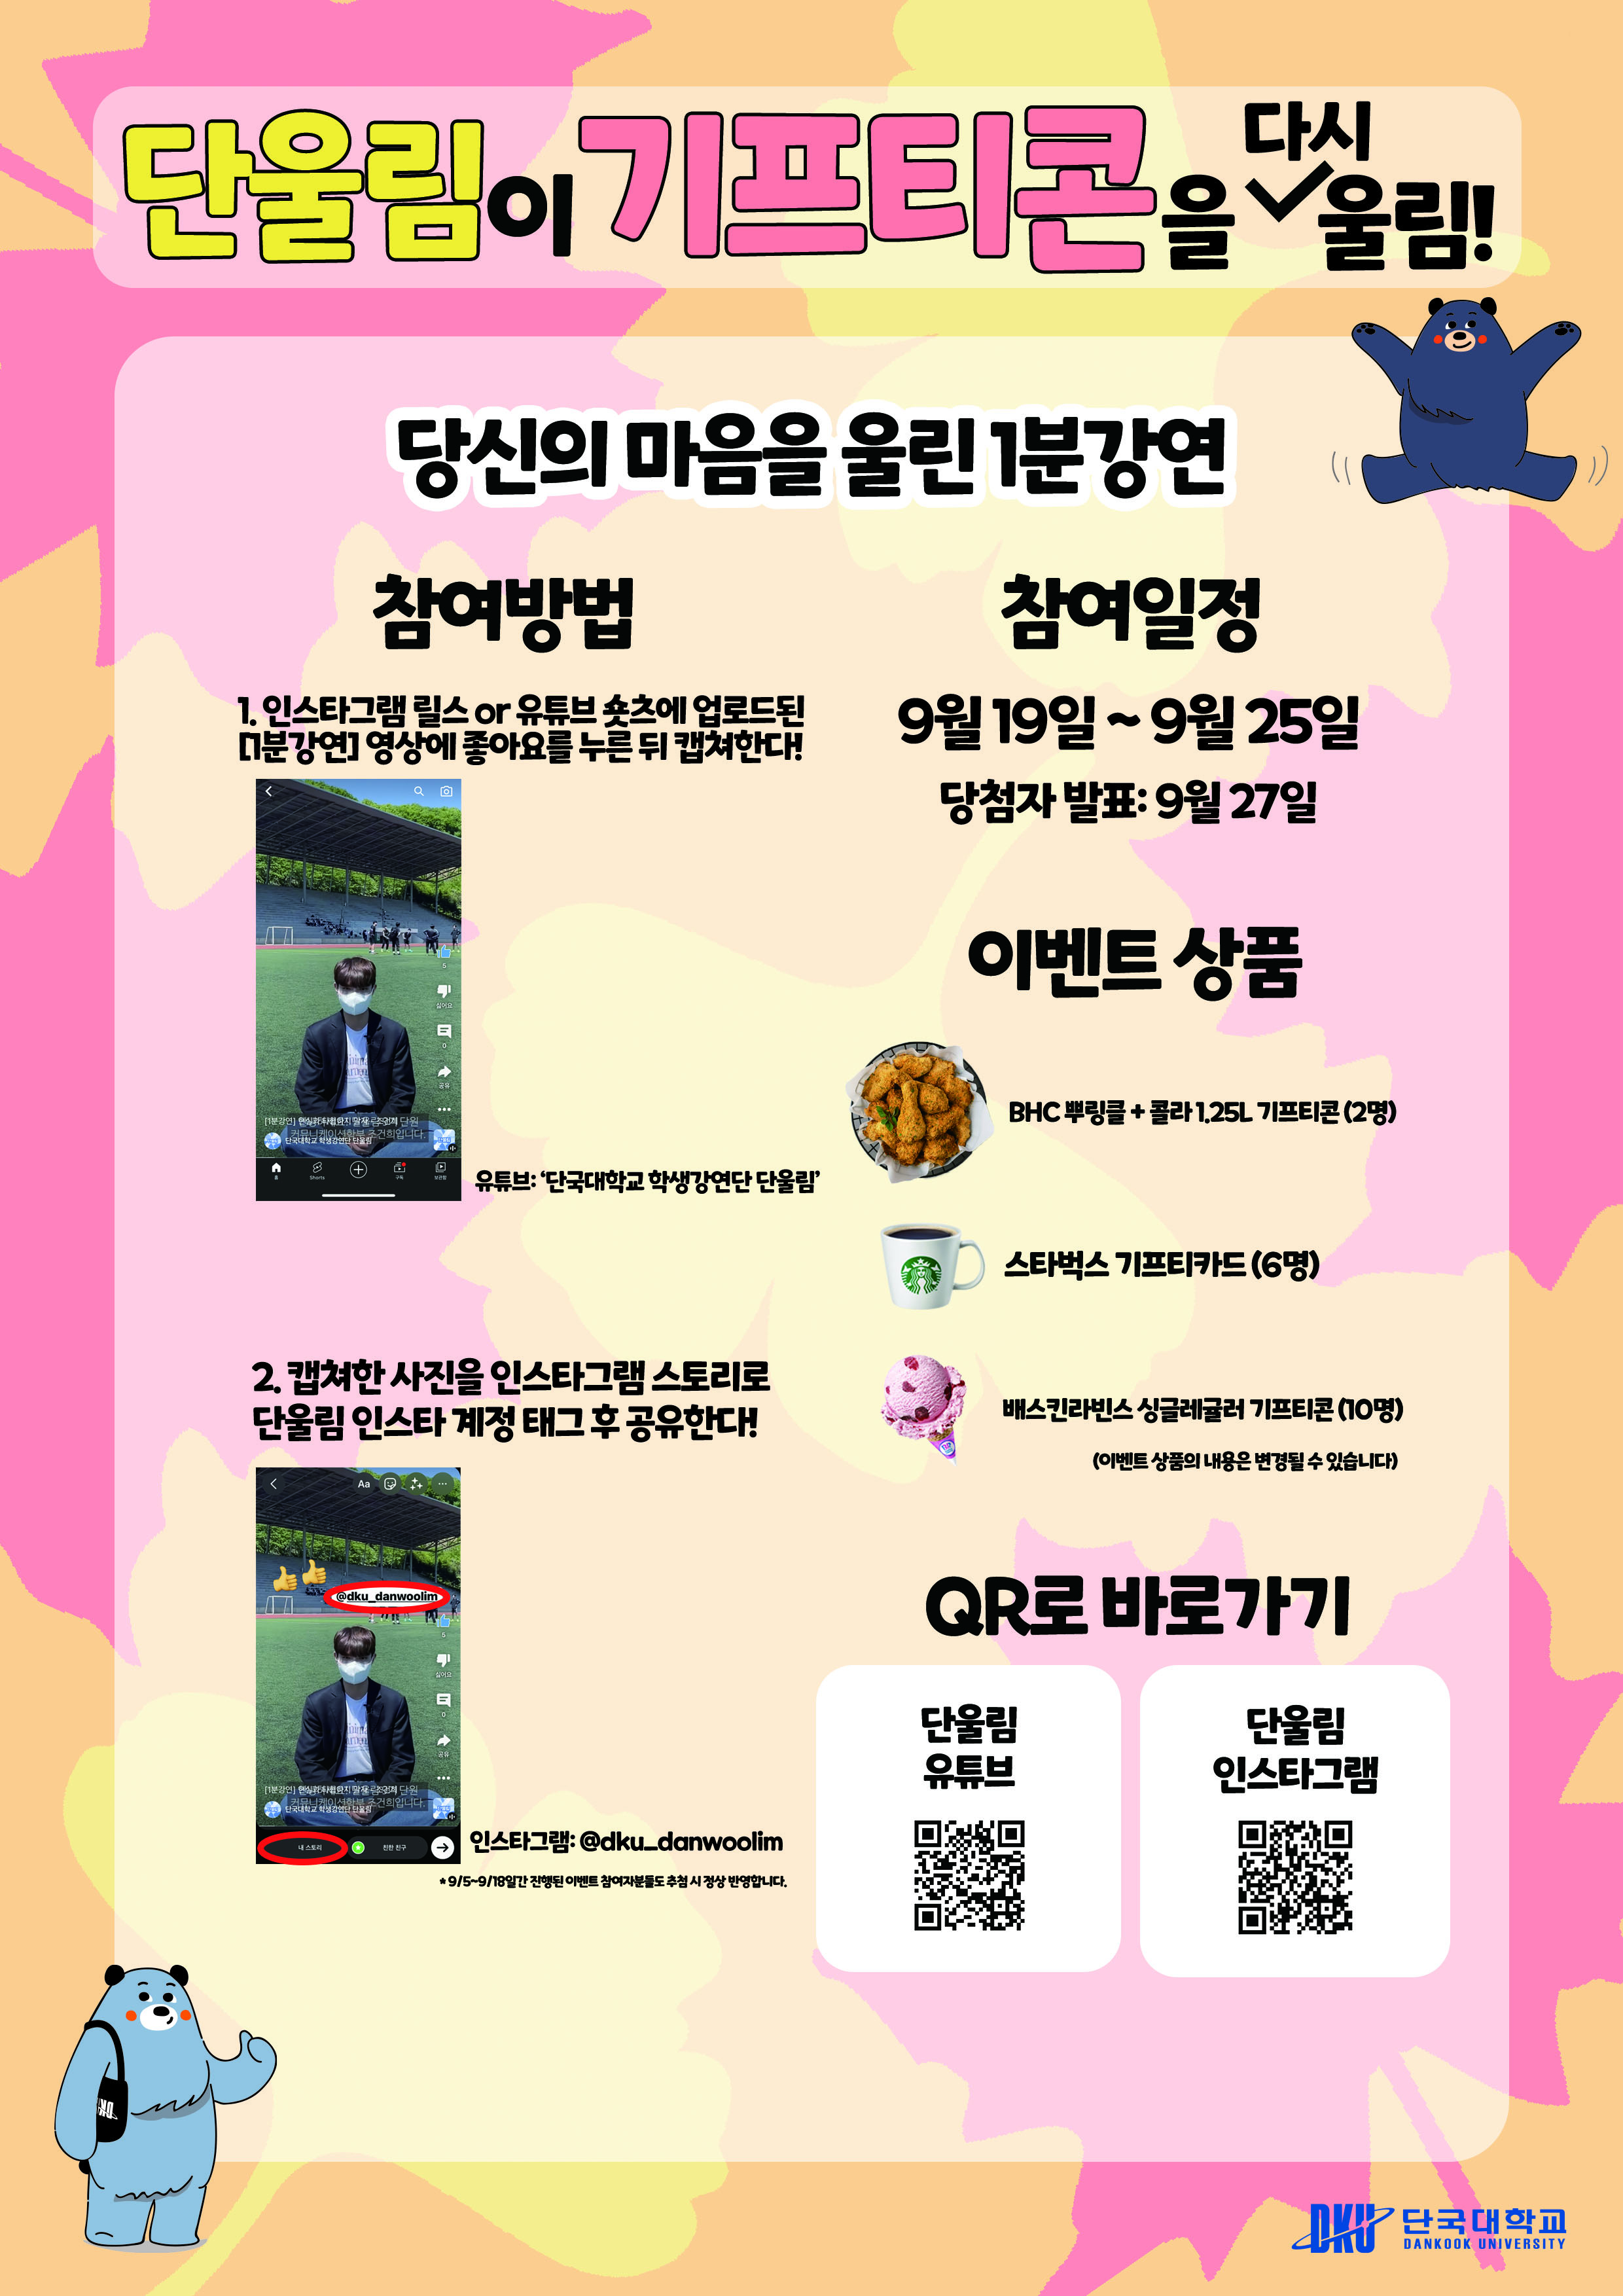 20220919-붙임. 단울림 1분강연 홍보 이벤트 포스터.jpg